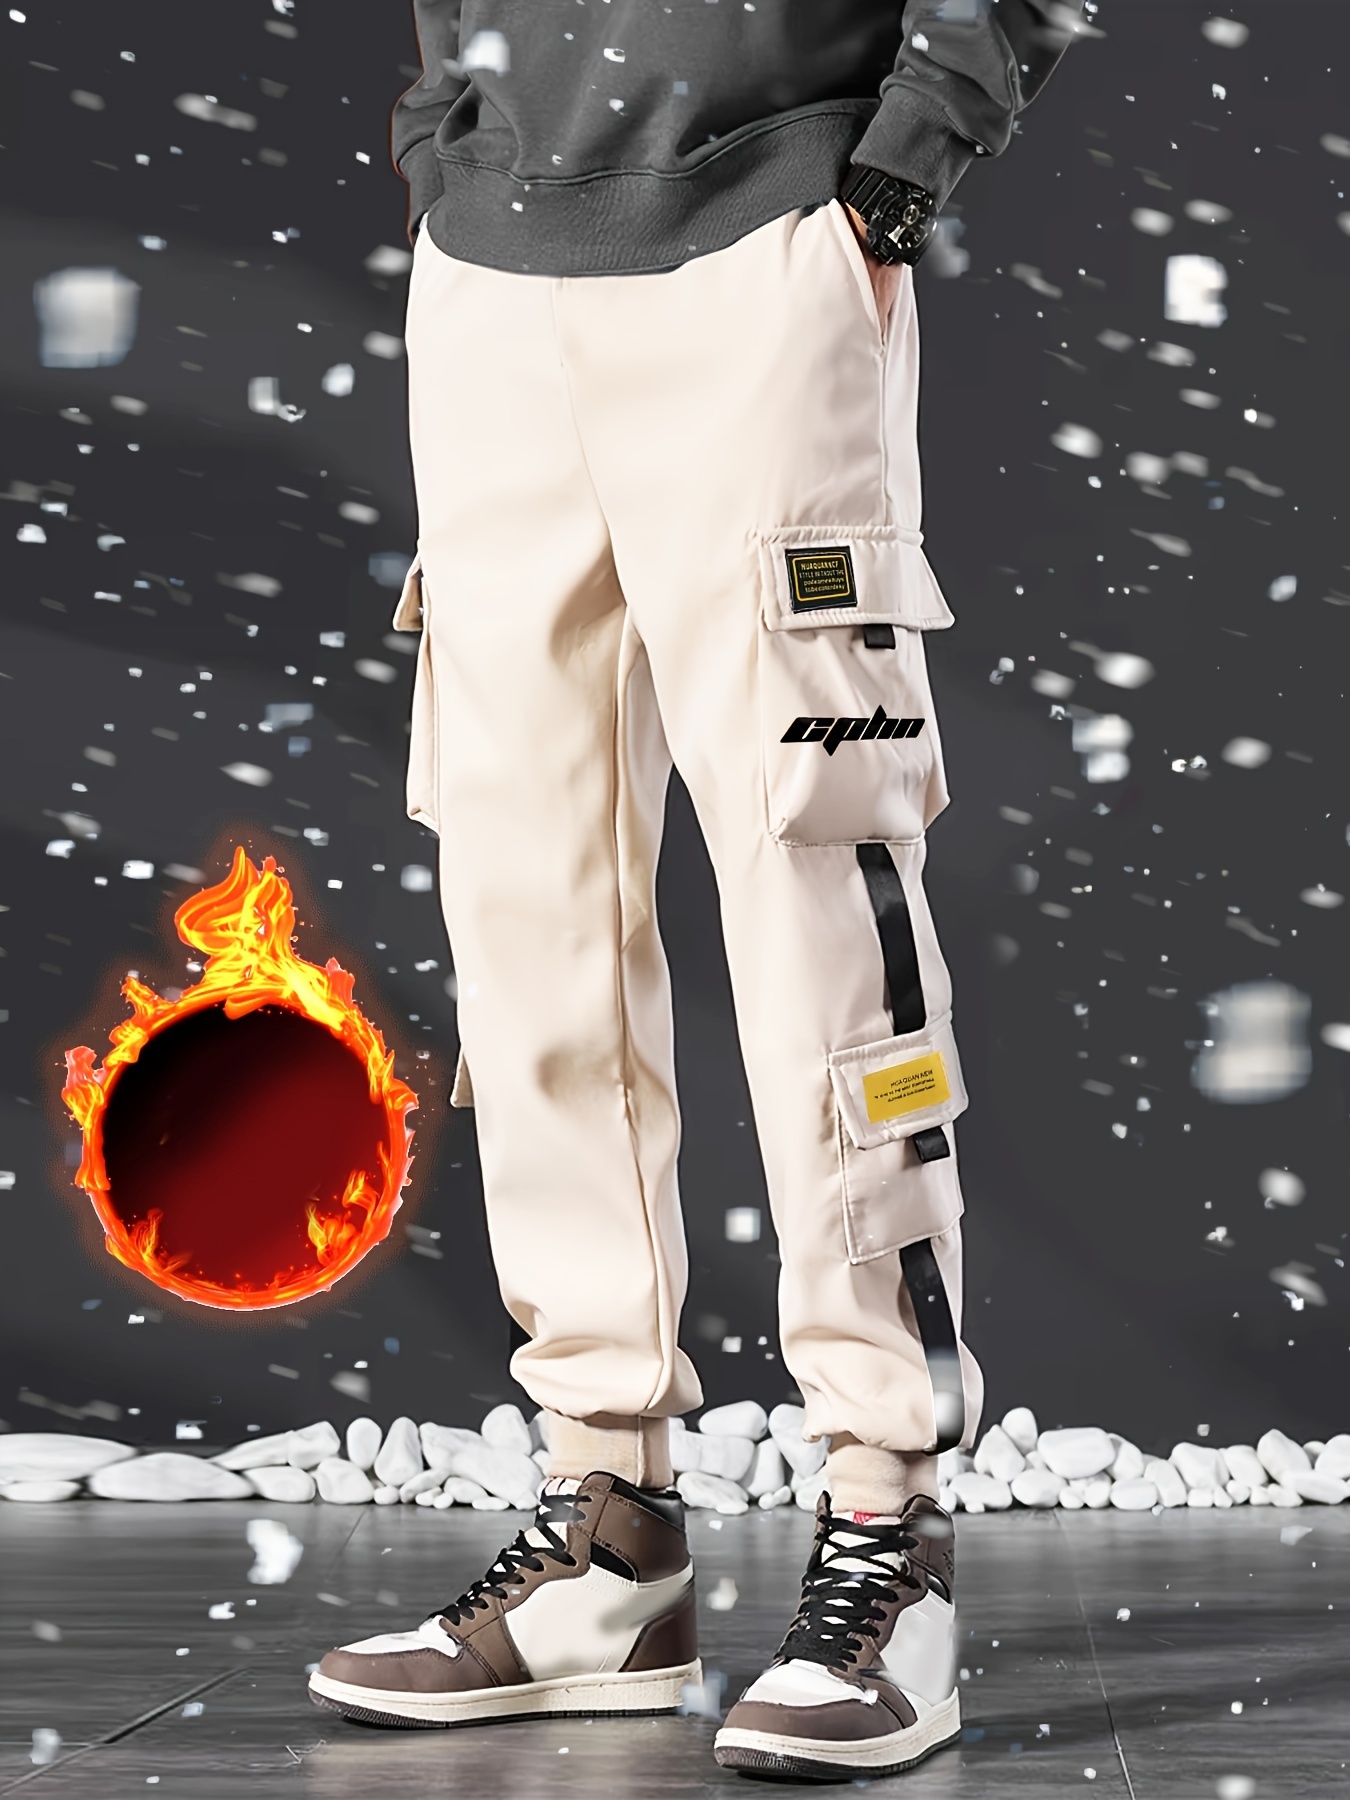 Pantalones cargo casuales para hombre Streetwear Fashion Hip Hop